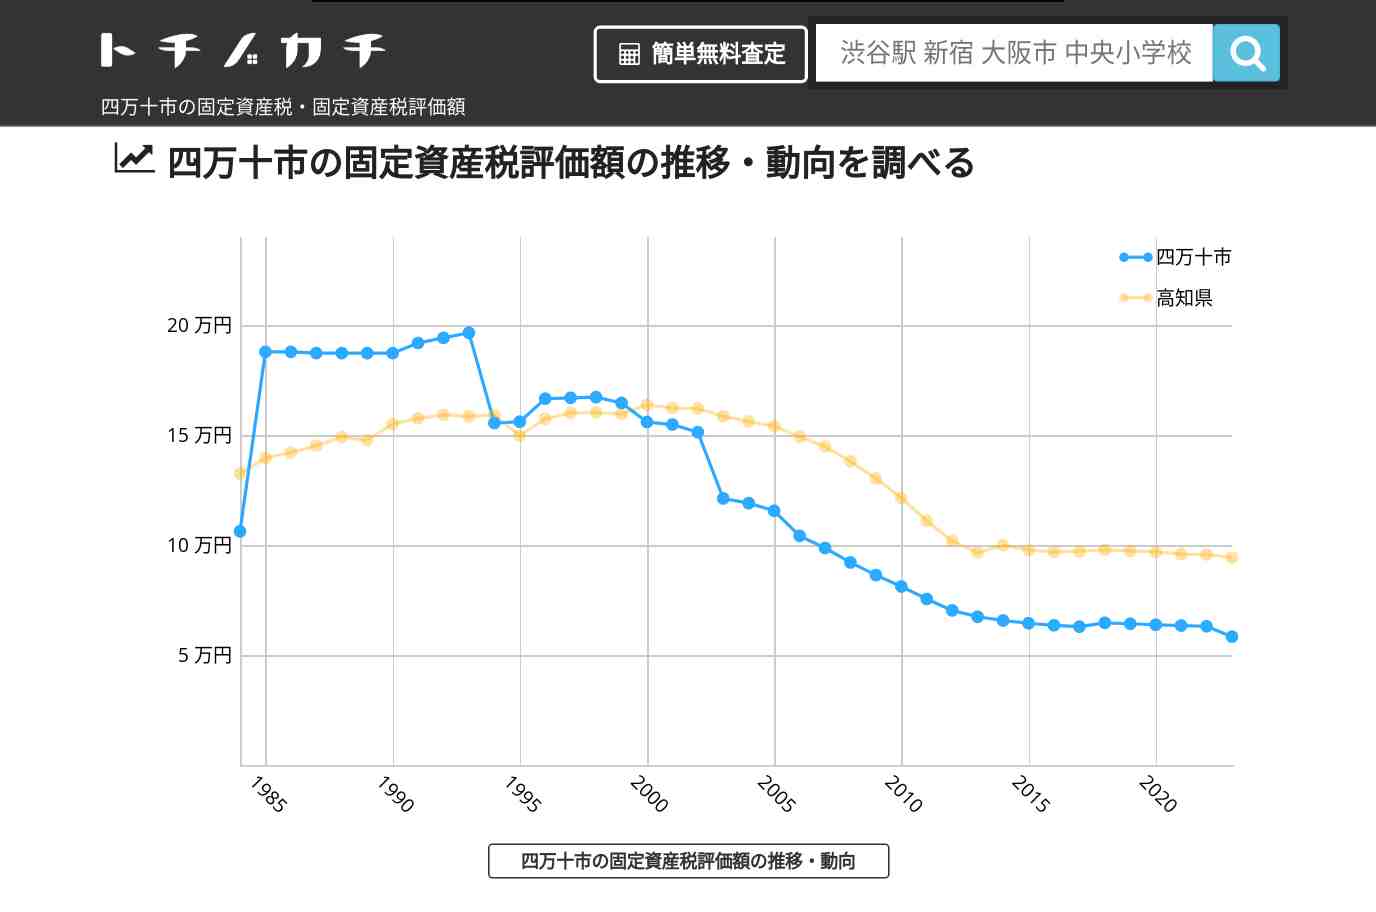 八束中学校(高知県 四万十市)周辺の固定資産税・固定資産税評価額 | トチノカチ